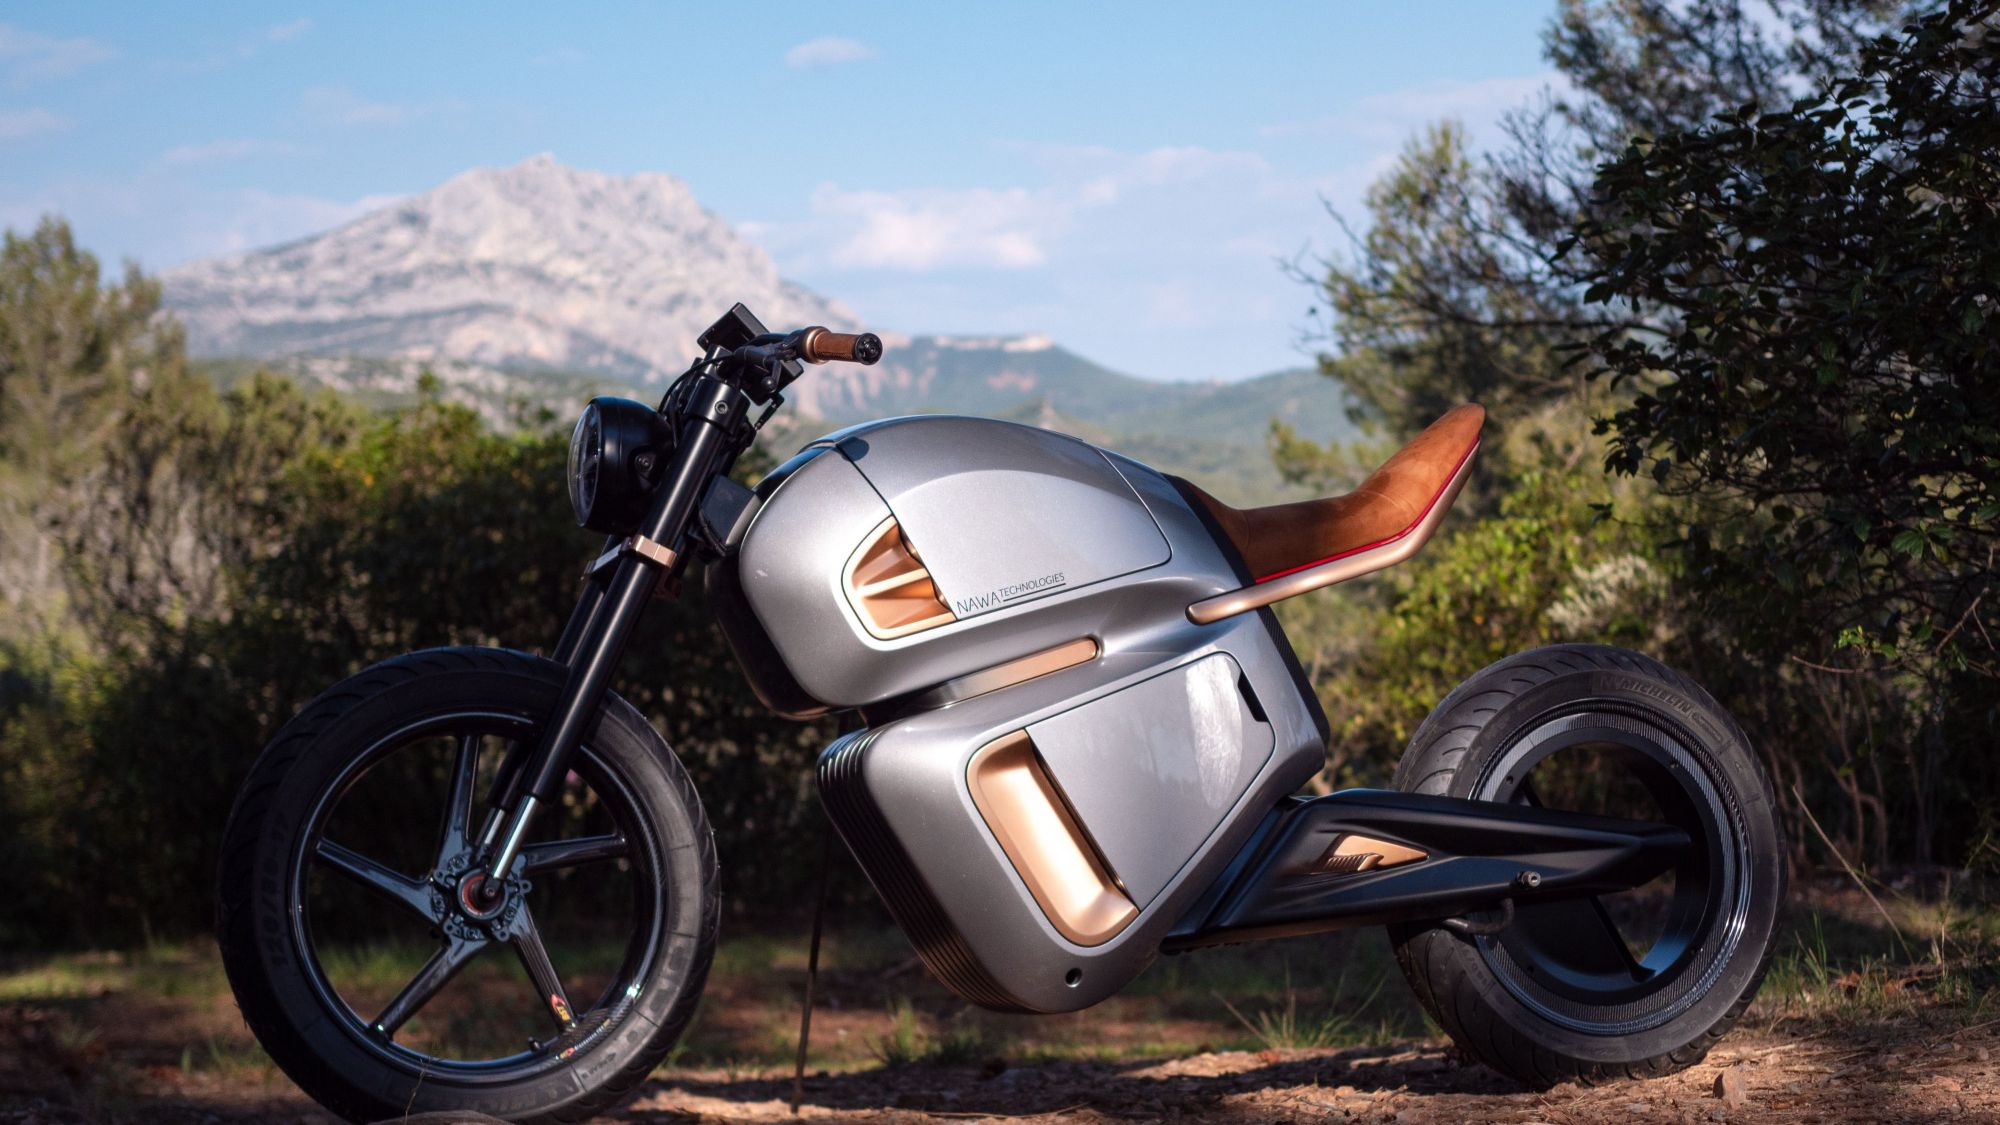 Moto elétrica de corrida da Ducatti voa a até quase 300 km/h - Canaltech